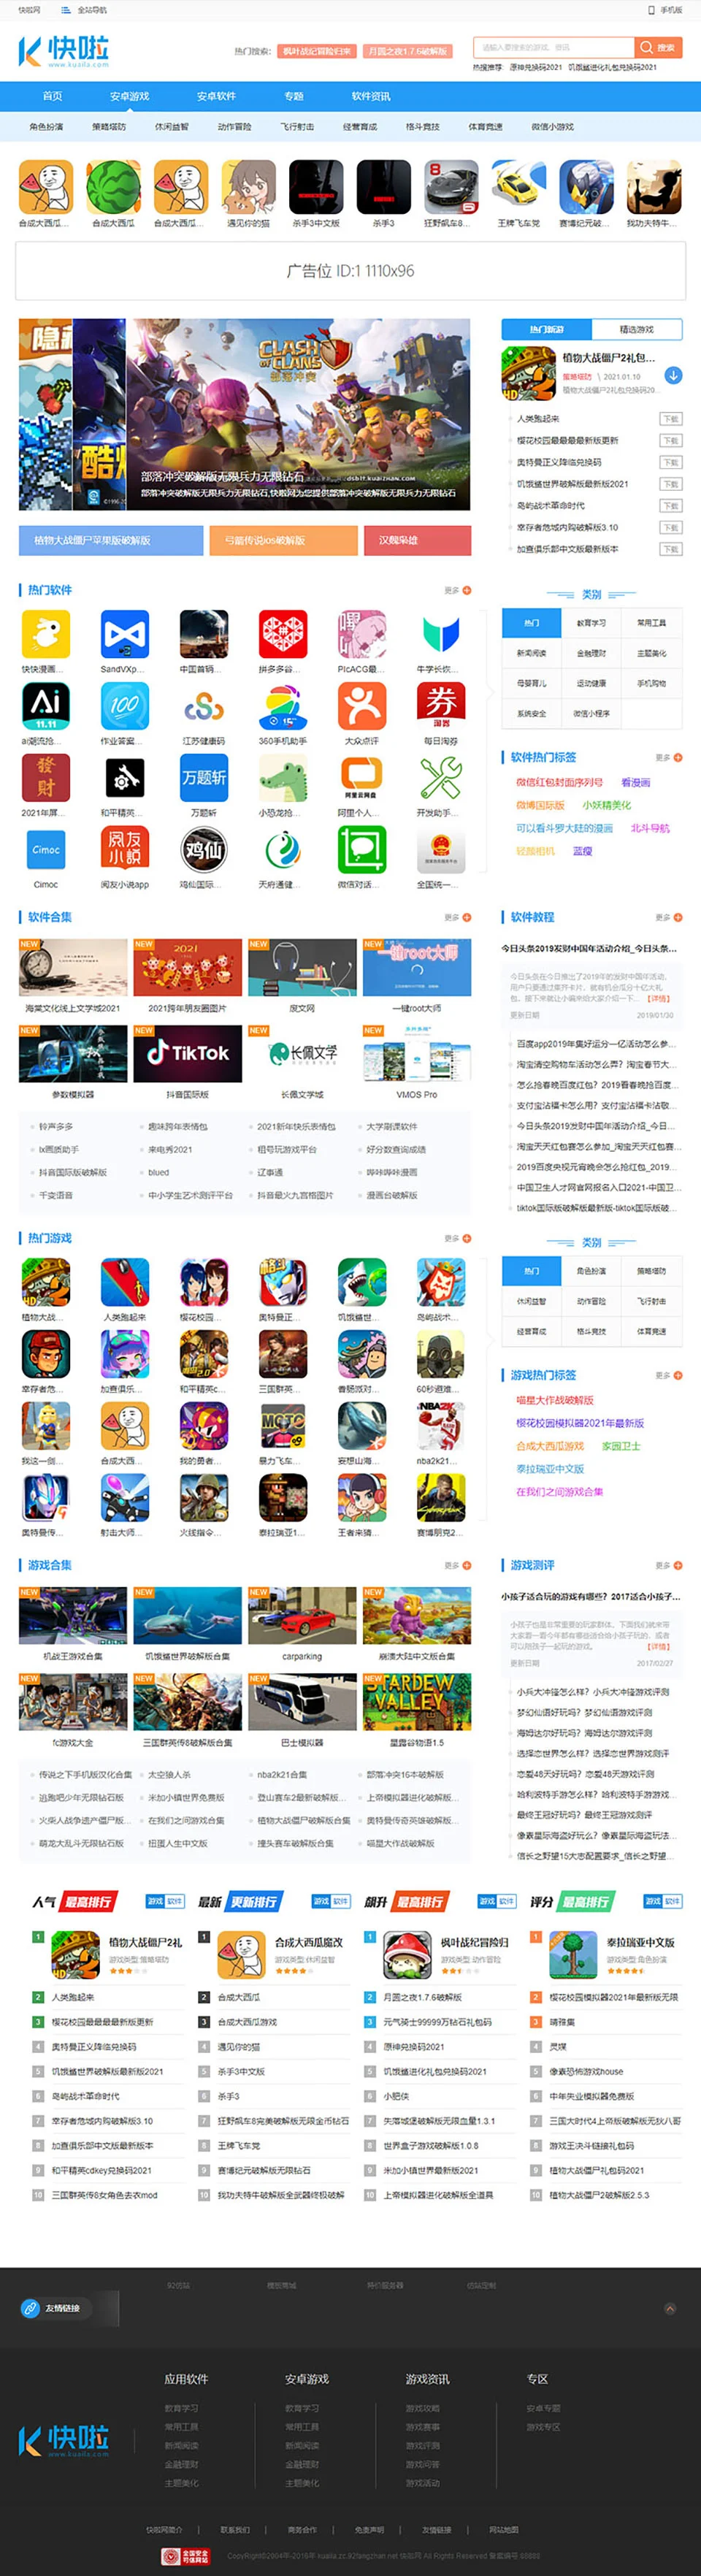 仿《快啦网》手机游戏软件下载门户网站模板 帝国cms+采集